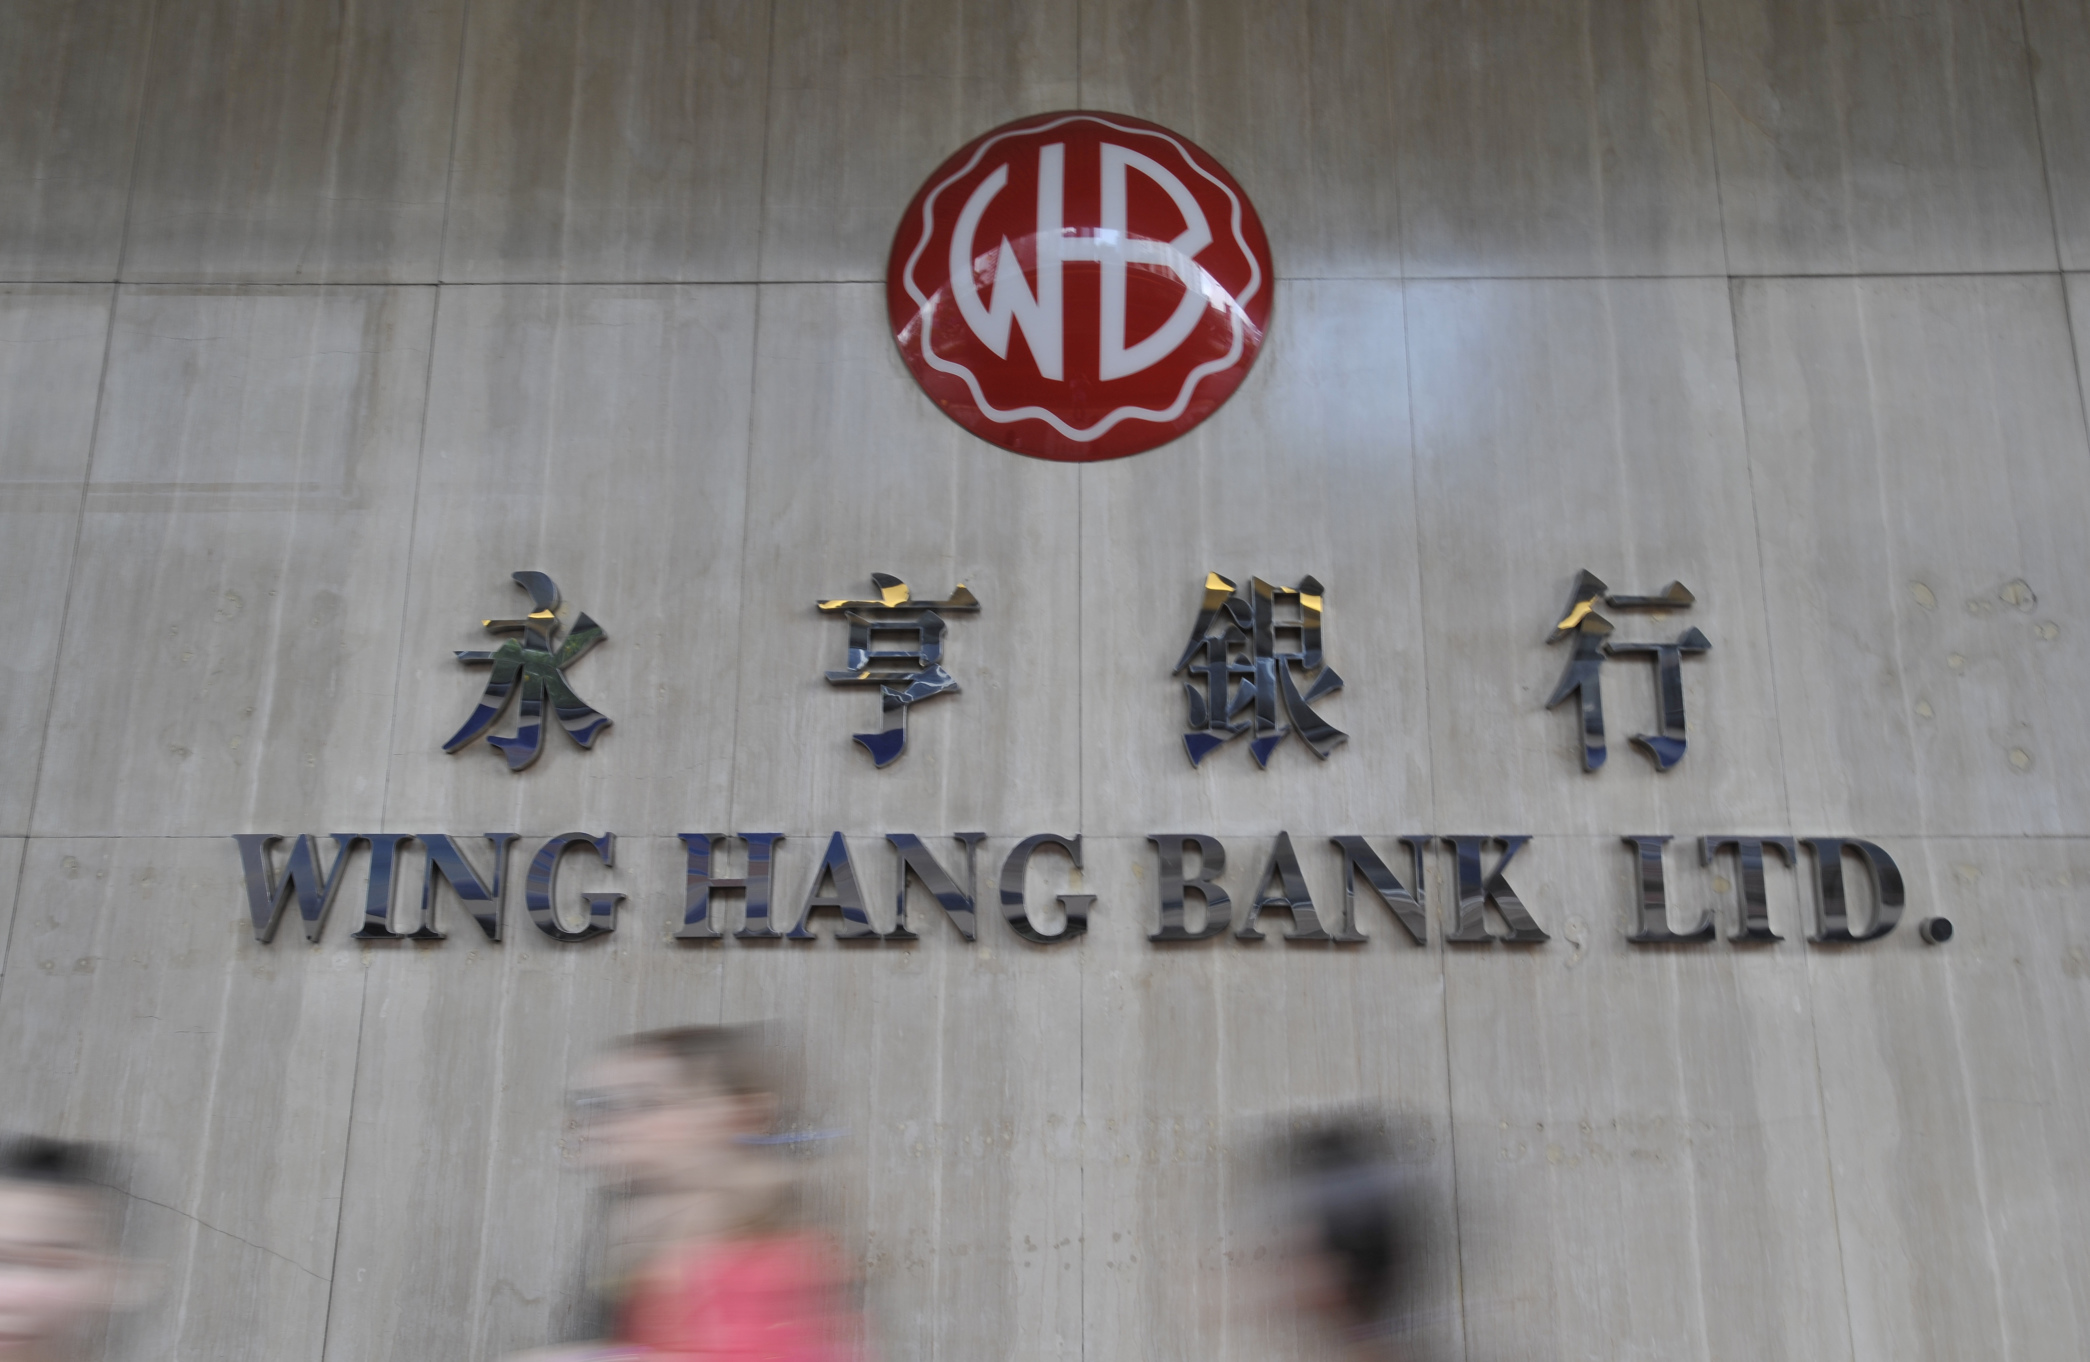 A branch of Wing Hang Bank in Wan Chai. Photo: Warton Li